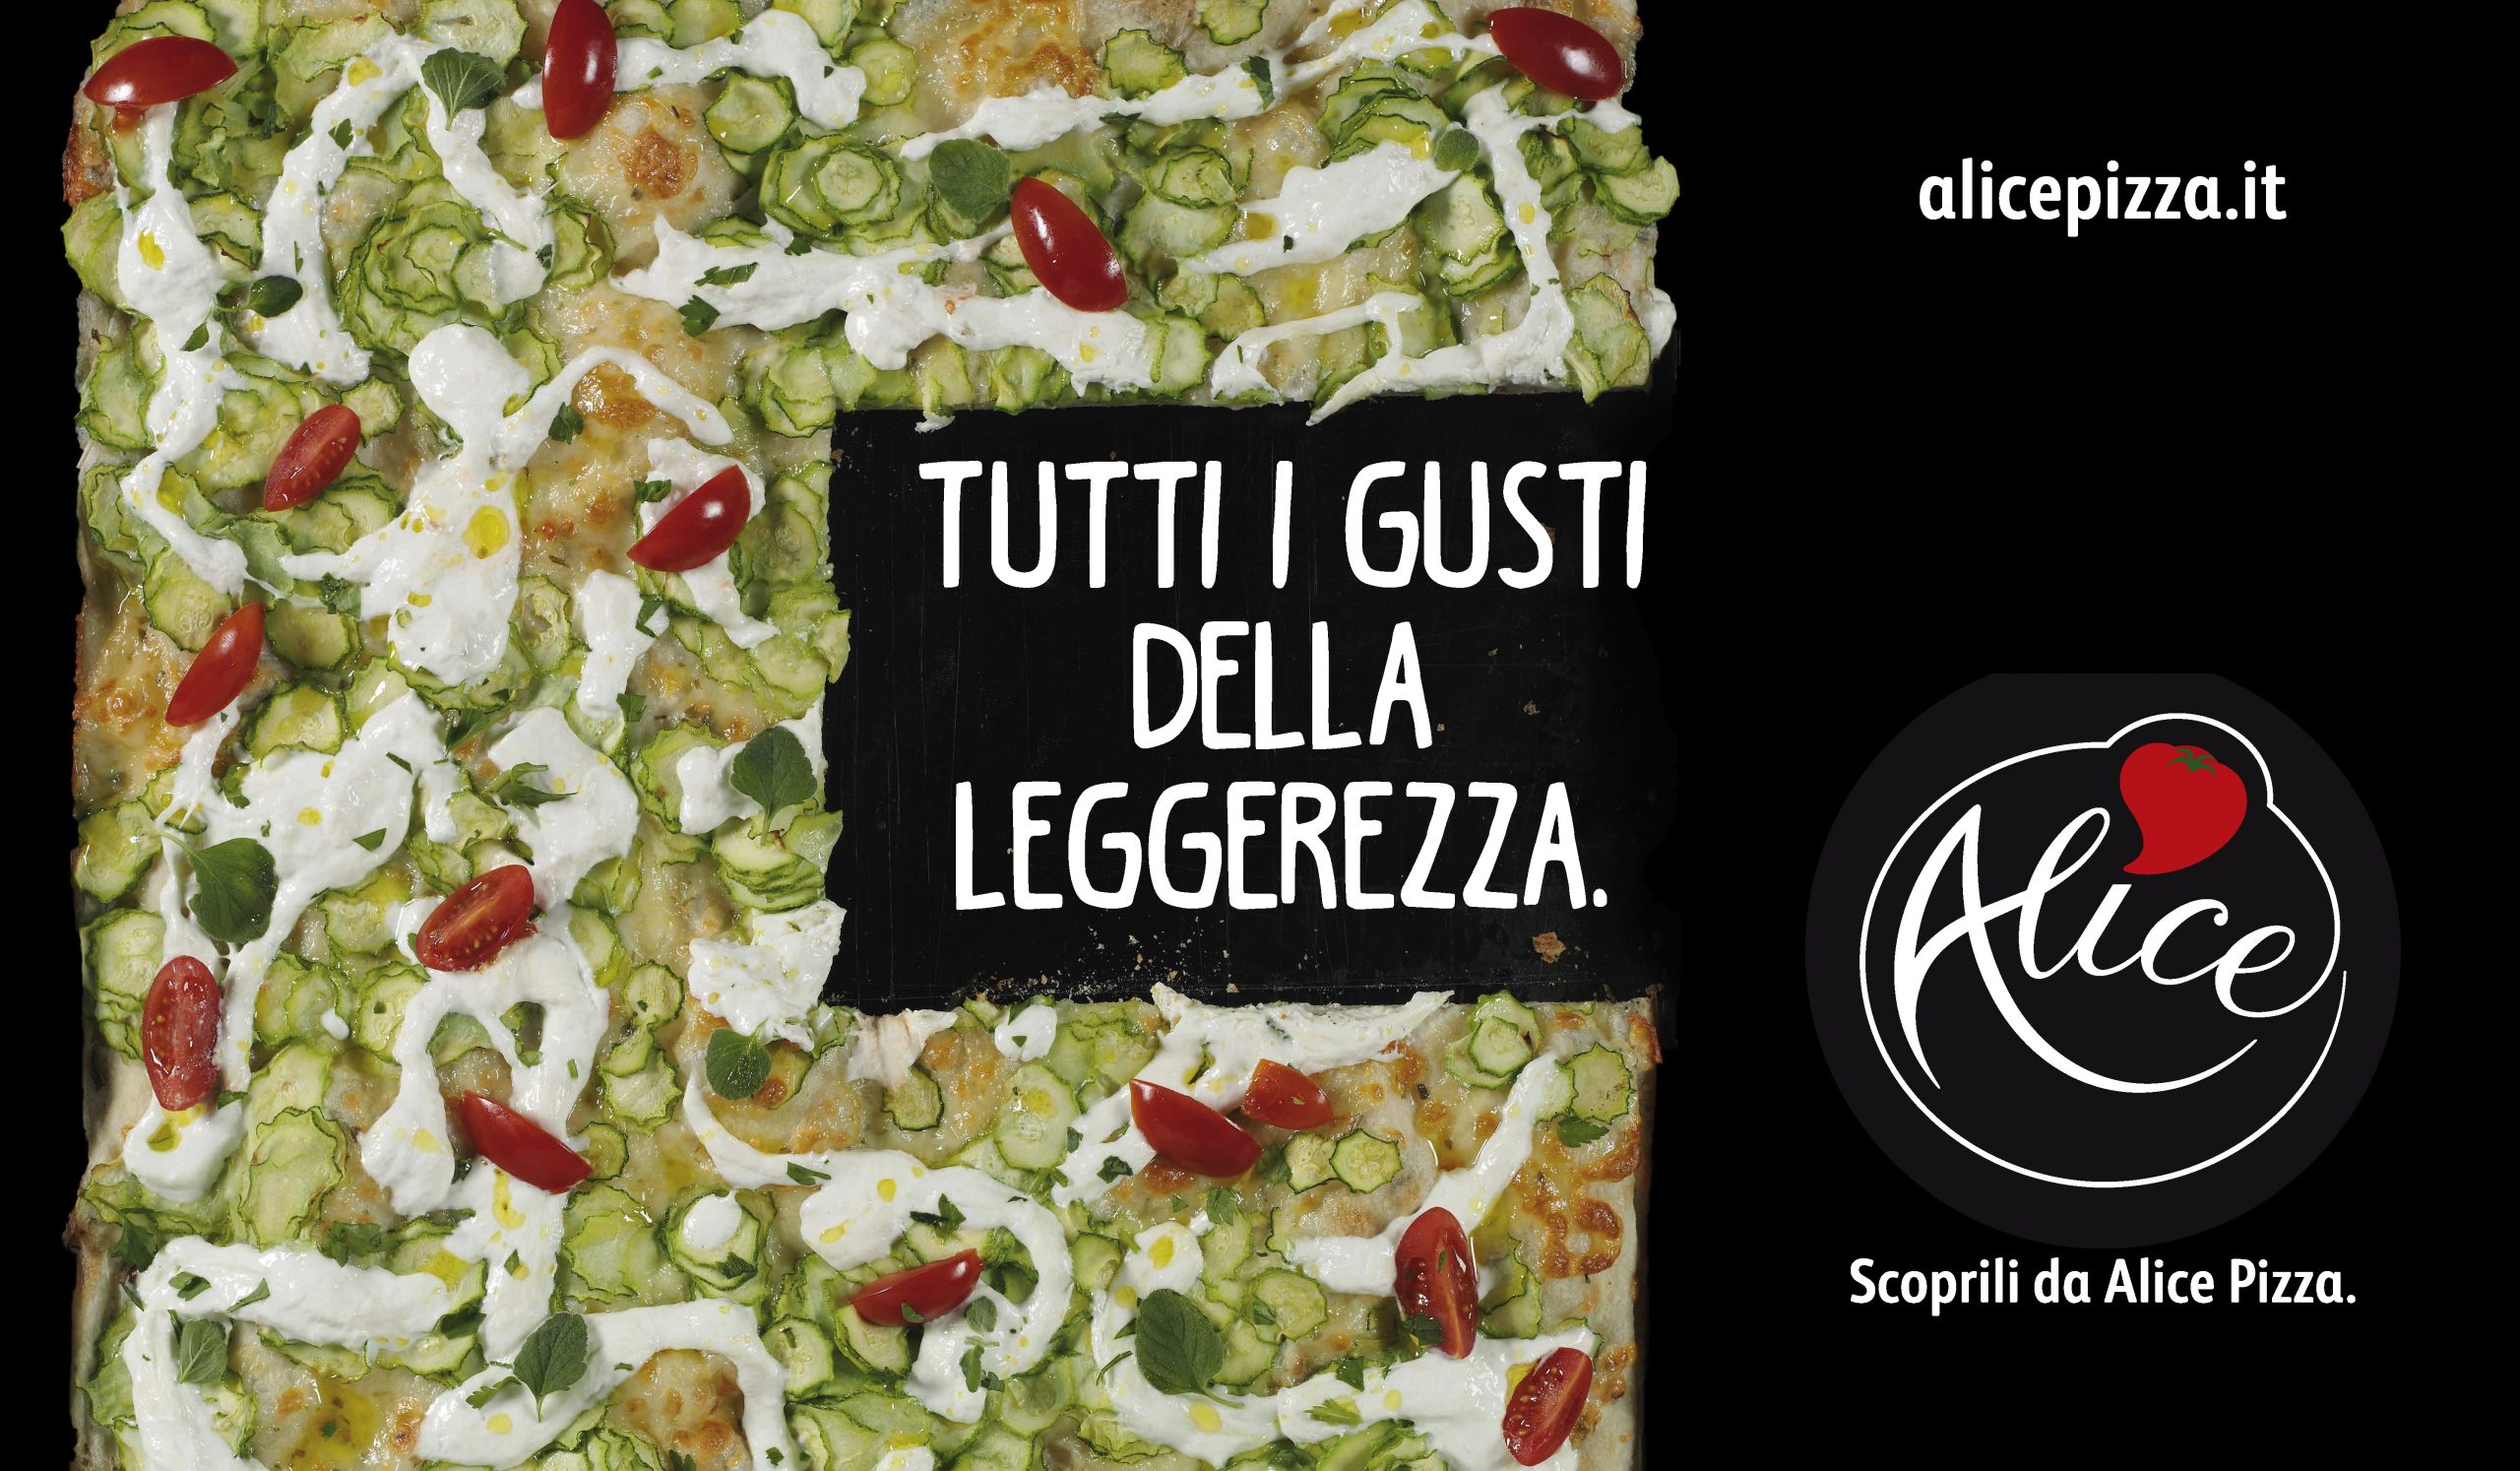 ALICE PIZZA – ALL THE TASTES OF INTESTA.